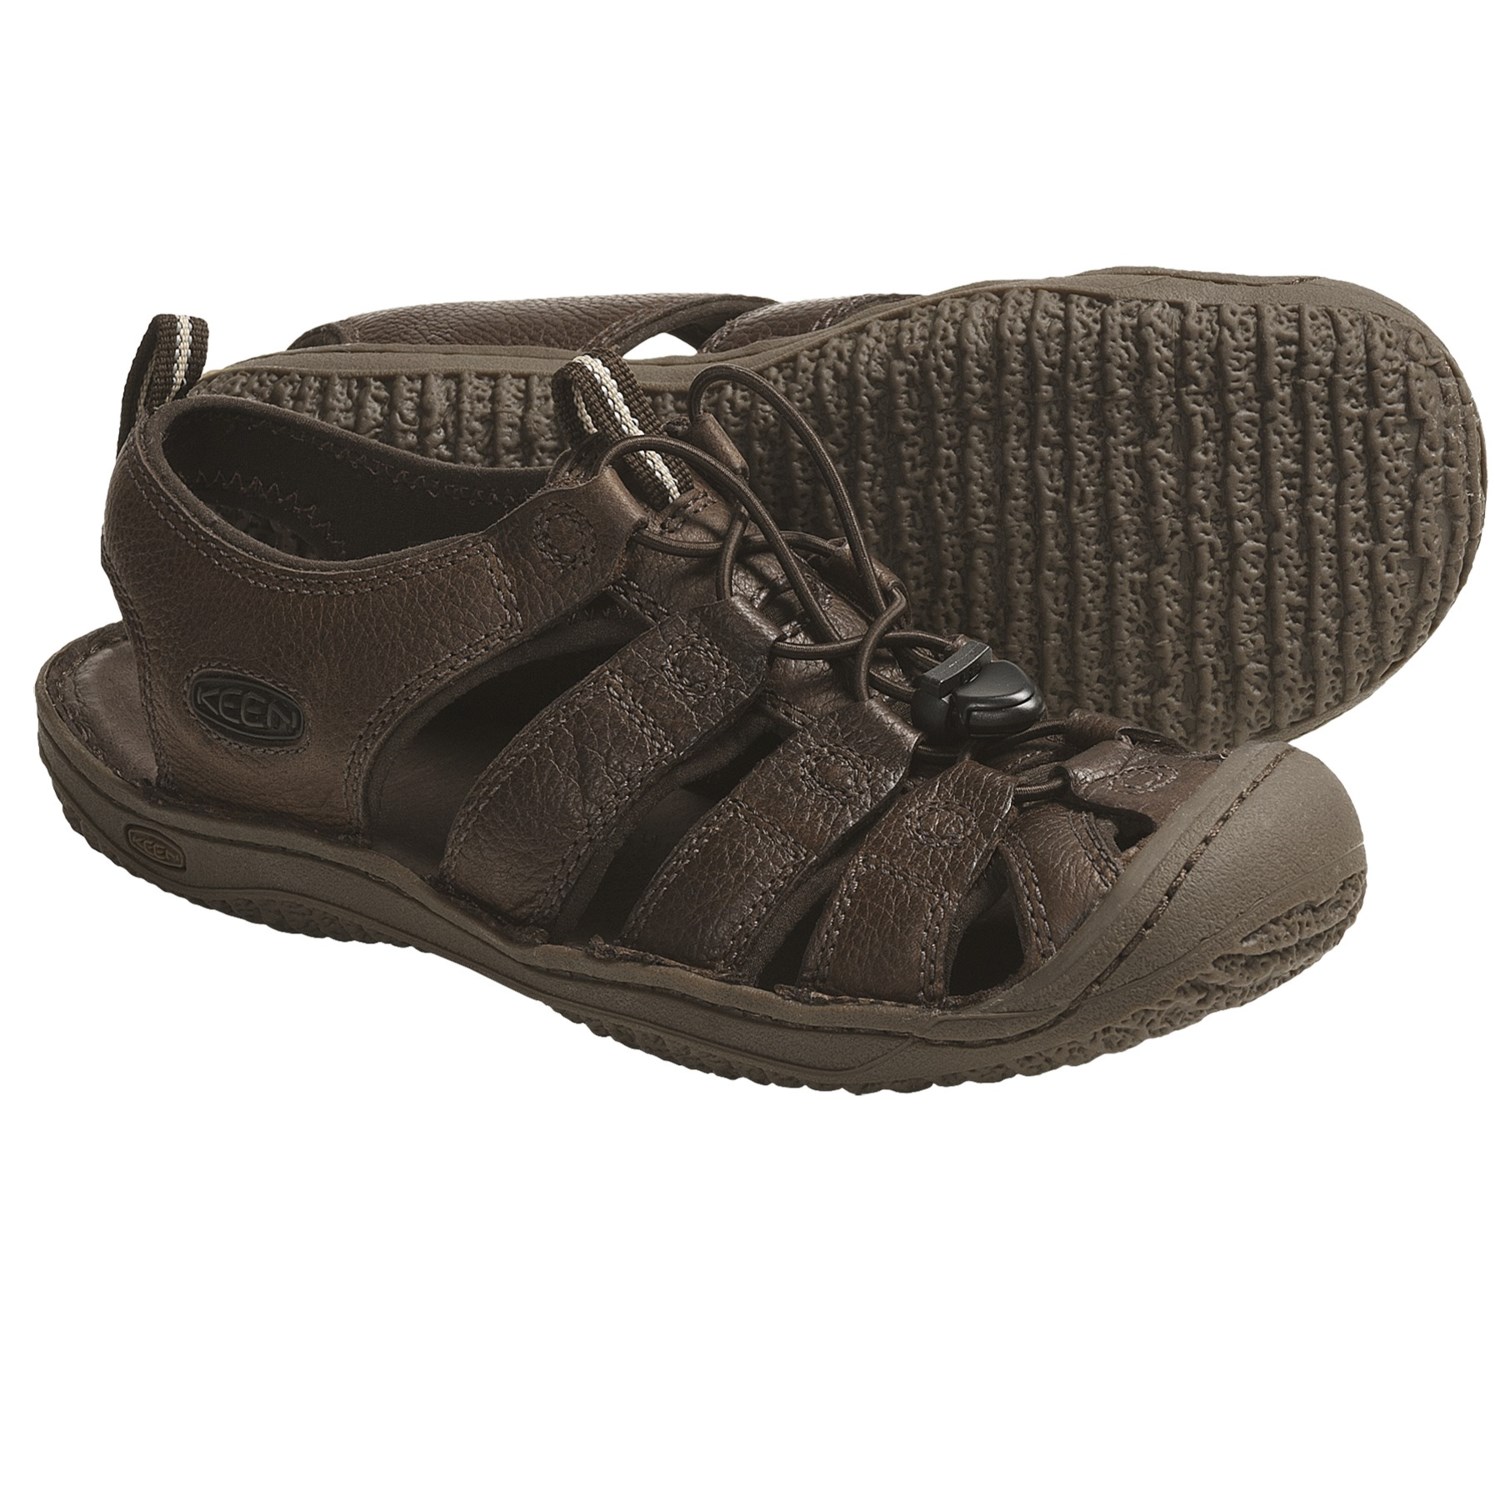 Keen Denver Sandals (For Men) 5119F - Save 55%